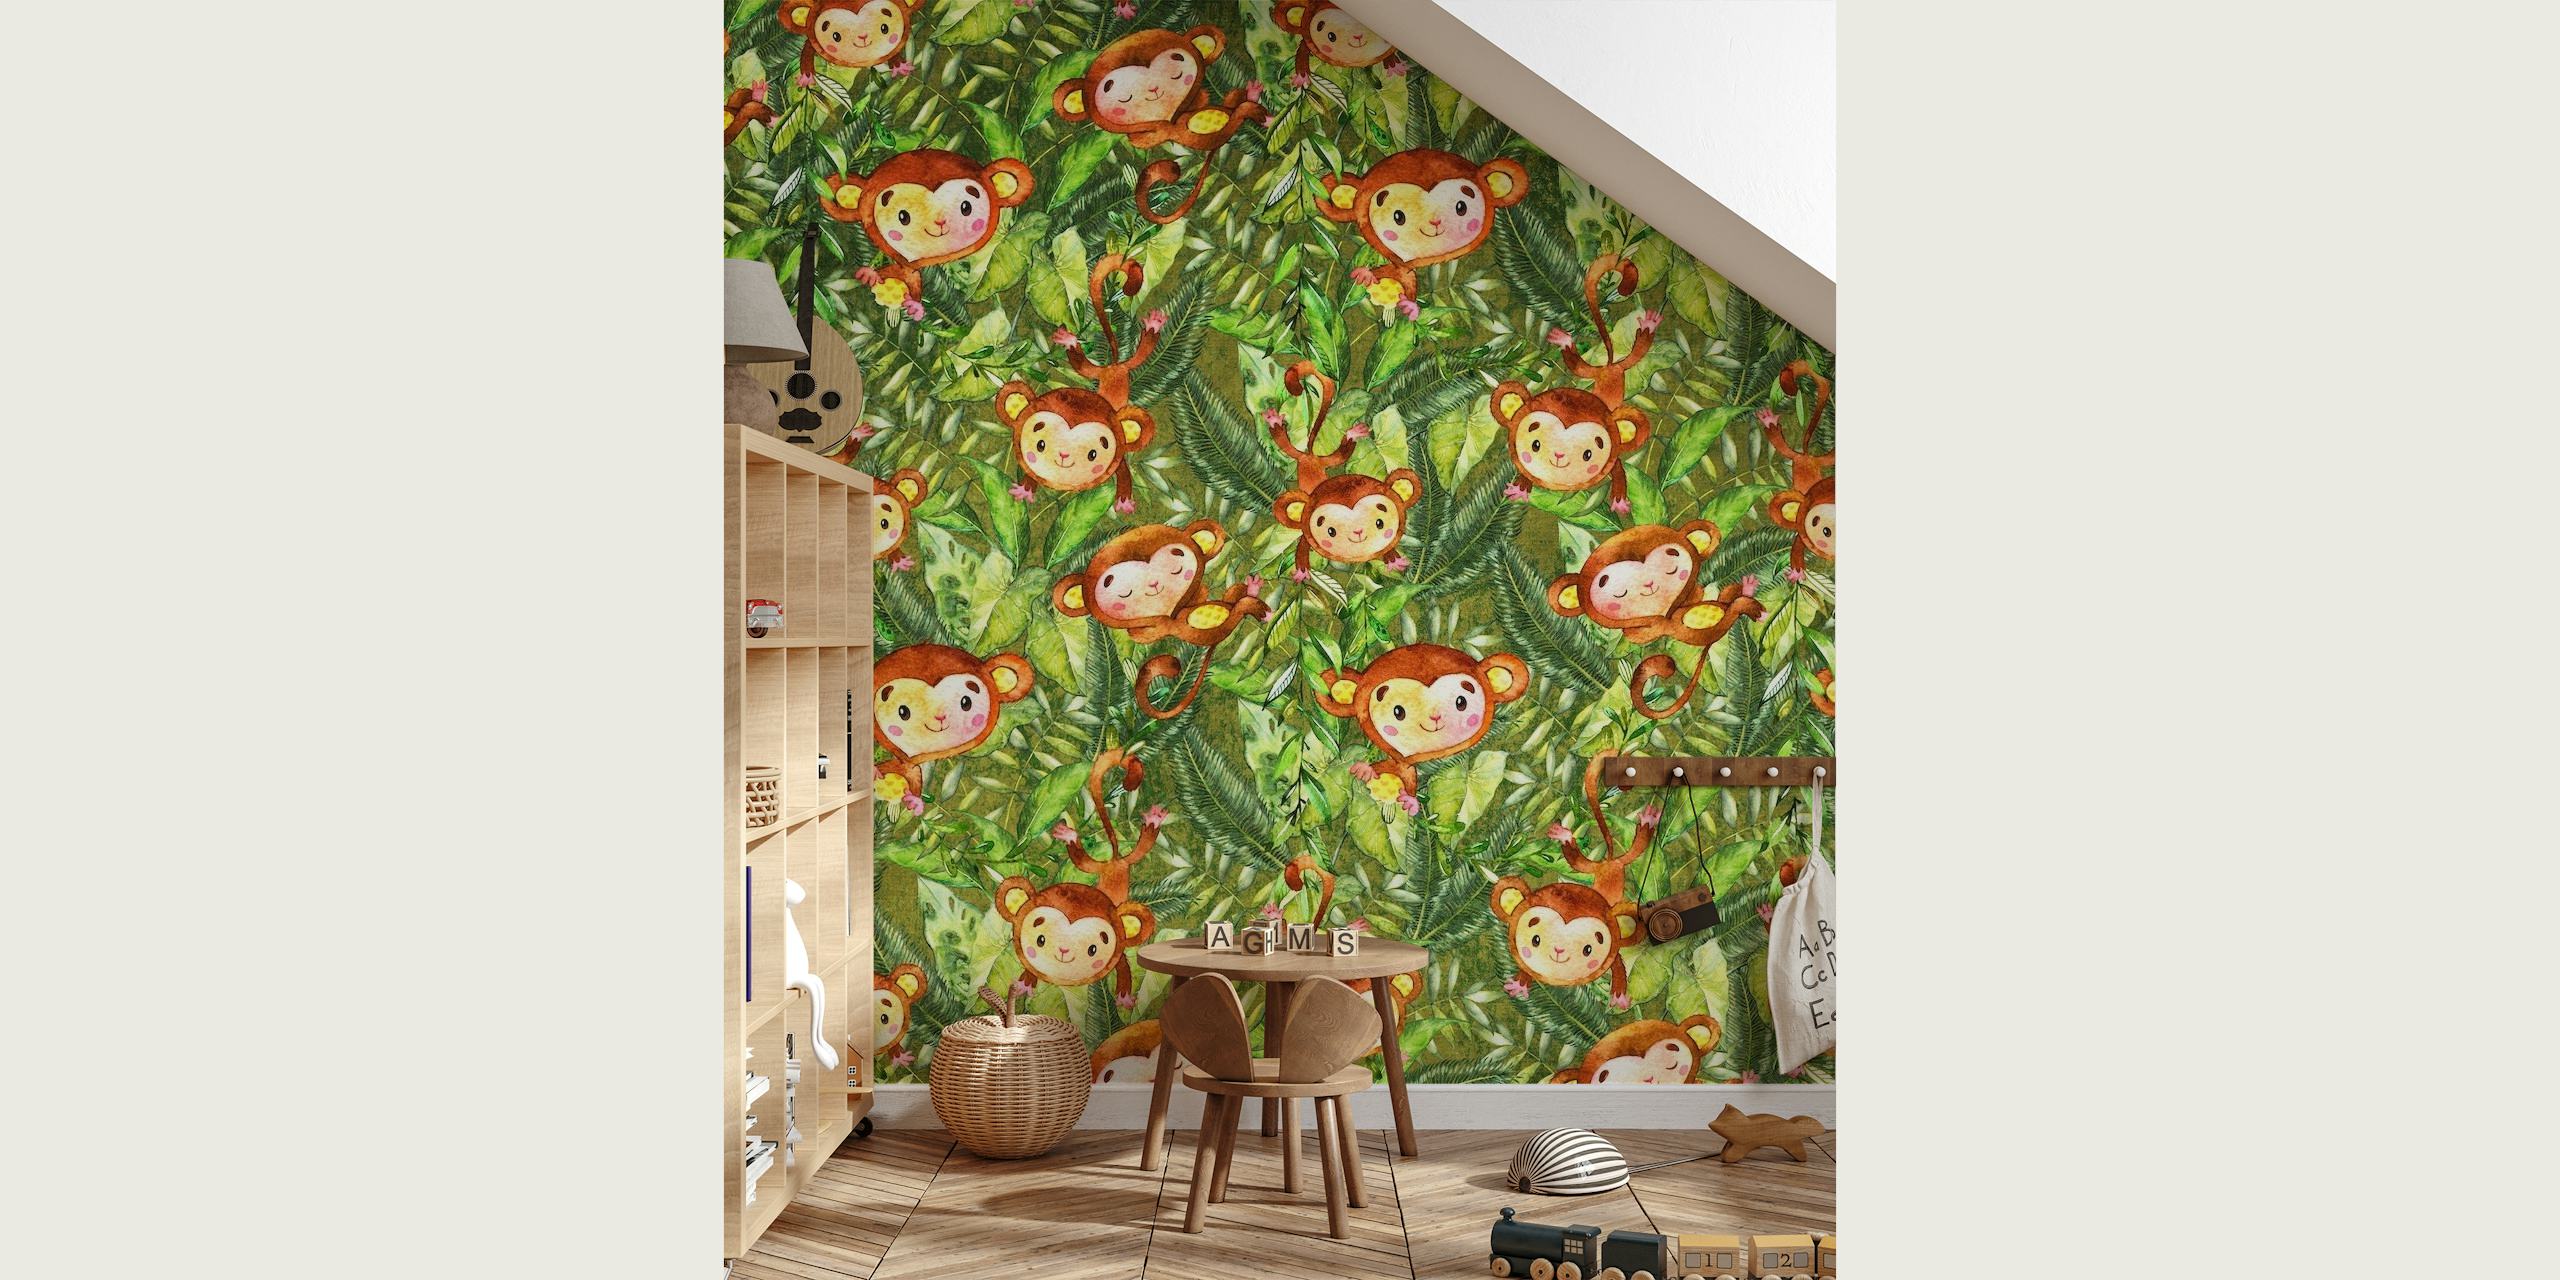 Monkeys in Jungle papel pintado